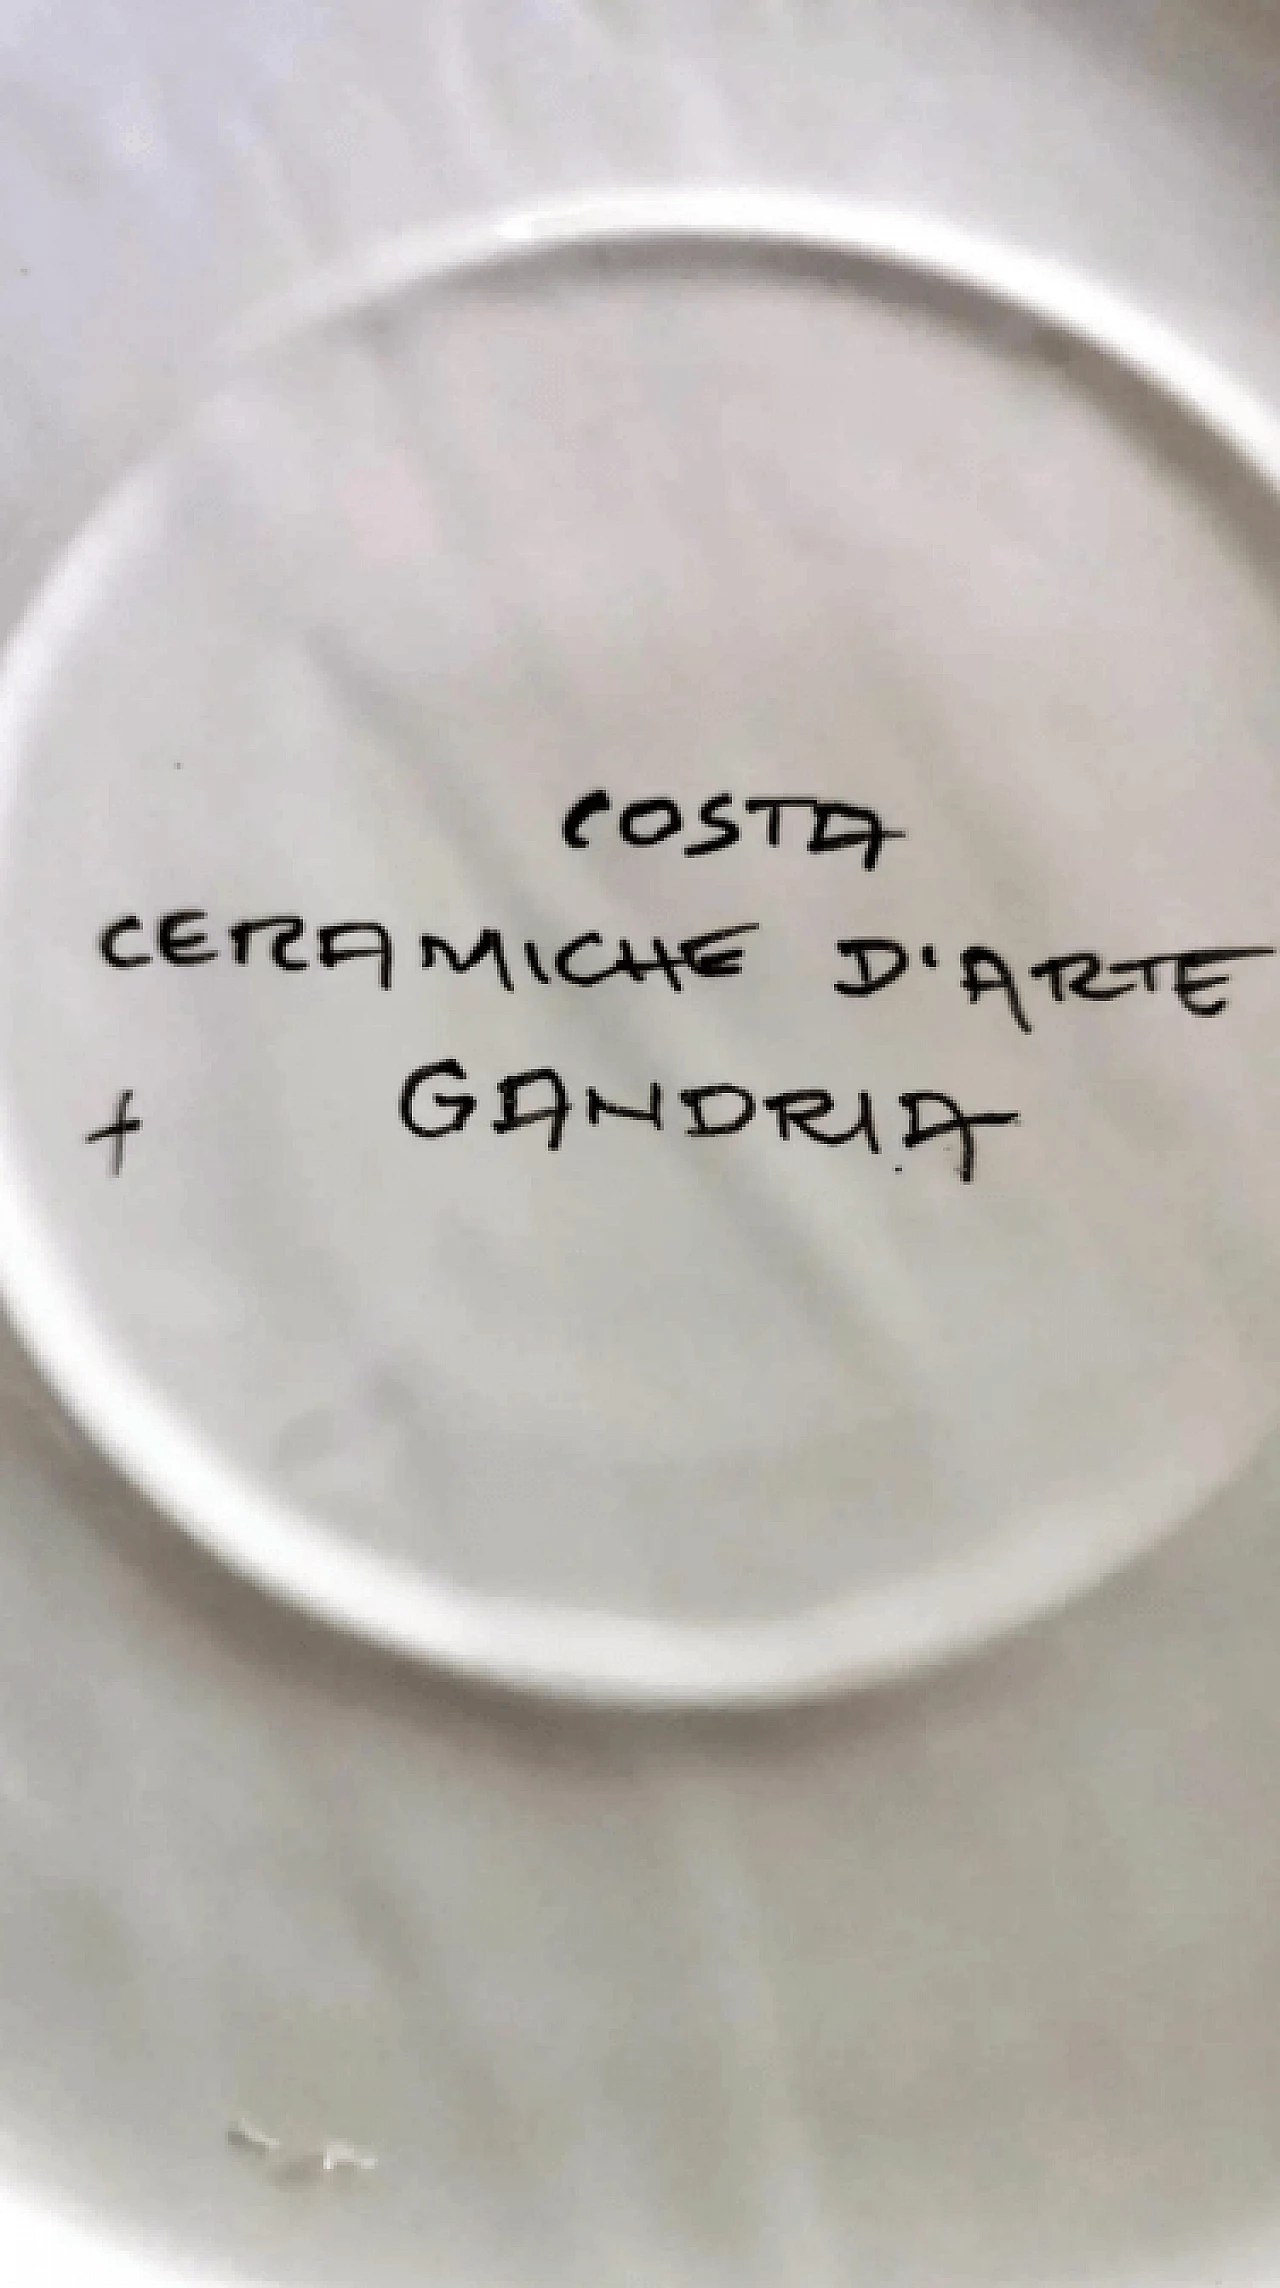 Swiss Uby ceramic plate by Costa Ceramiche d'Arte, 1990s 16